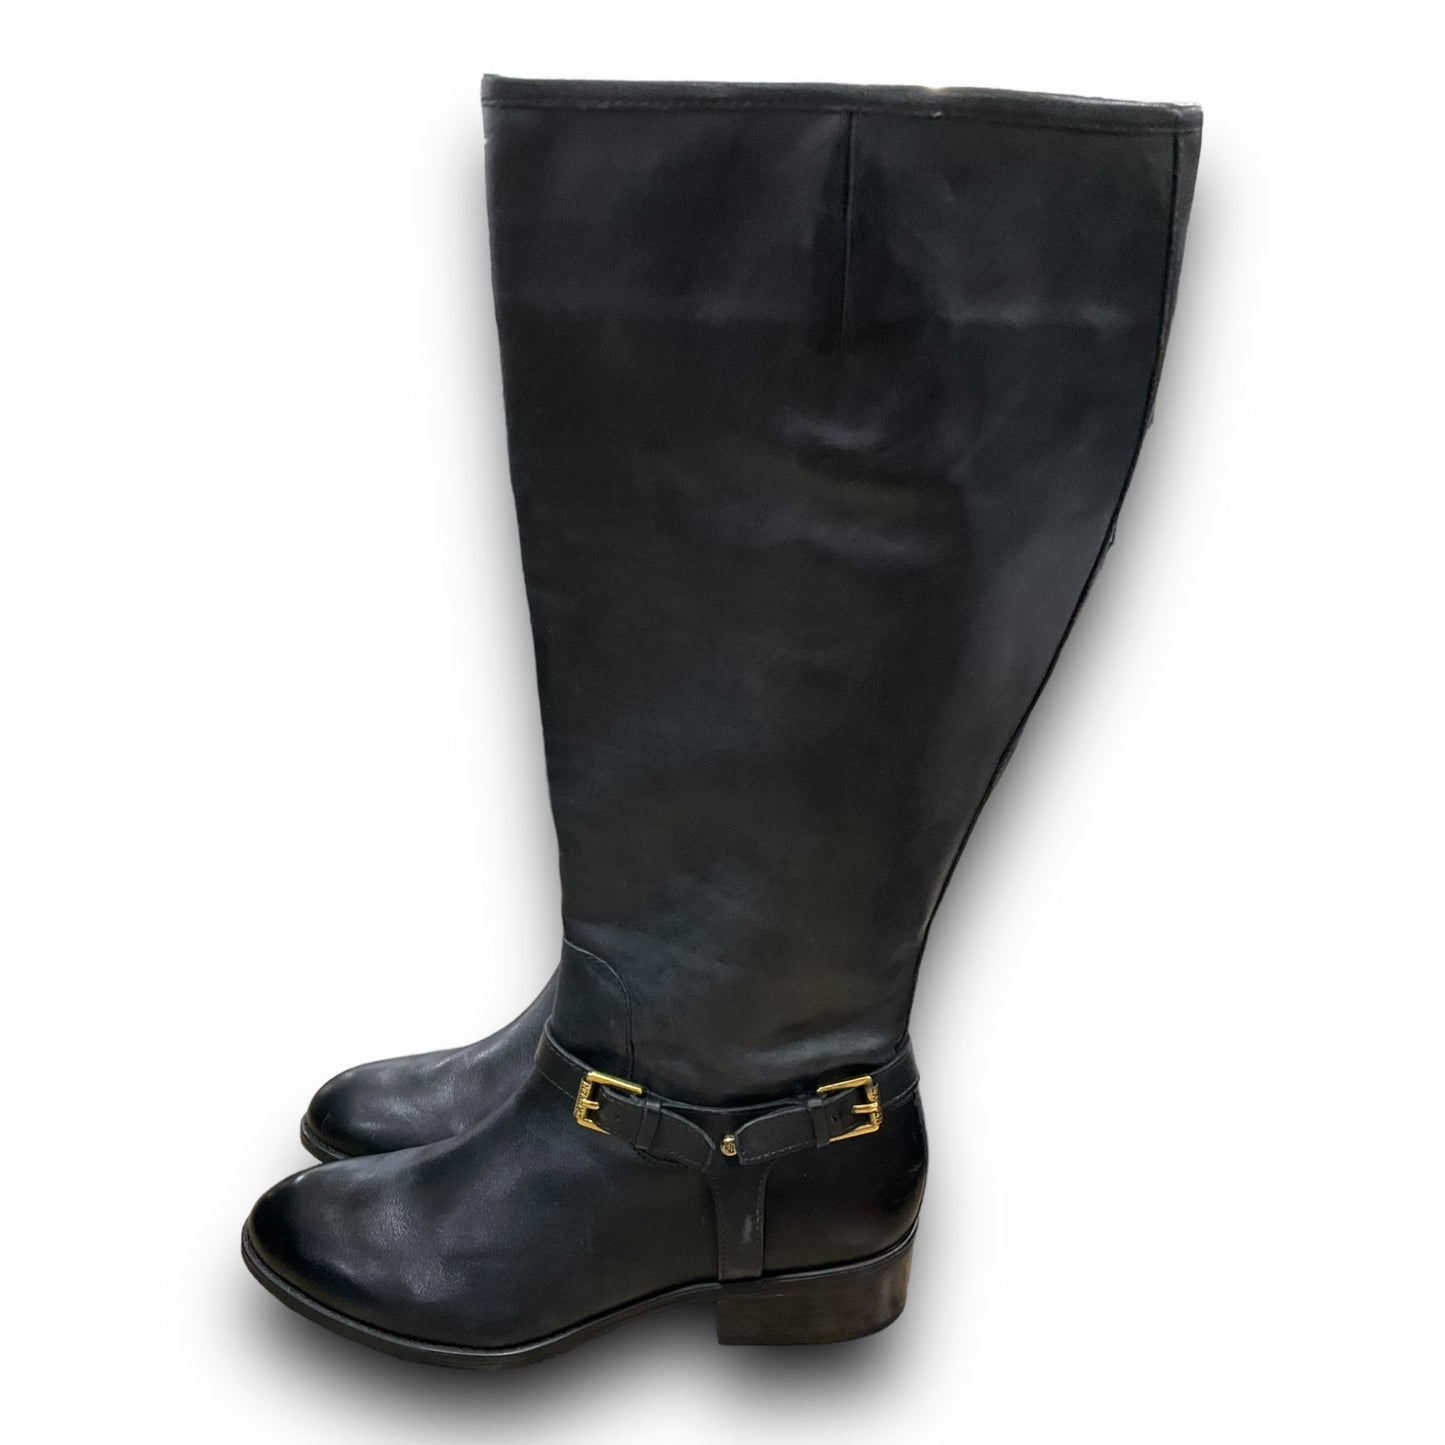 Boots Knee Flats By Lauren By Ralph Lauren  Size: 8.5